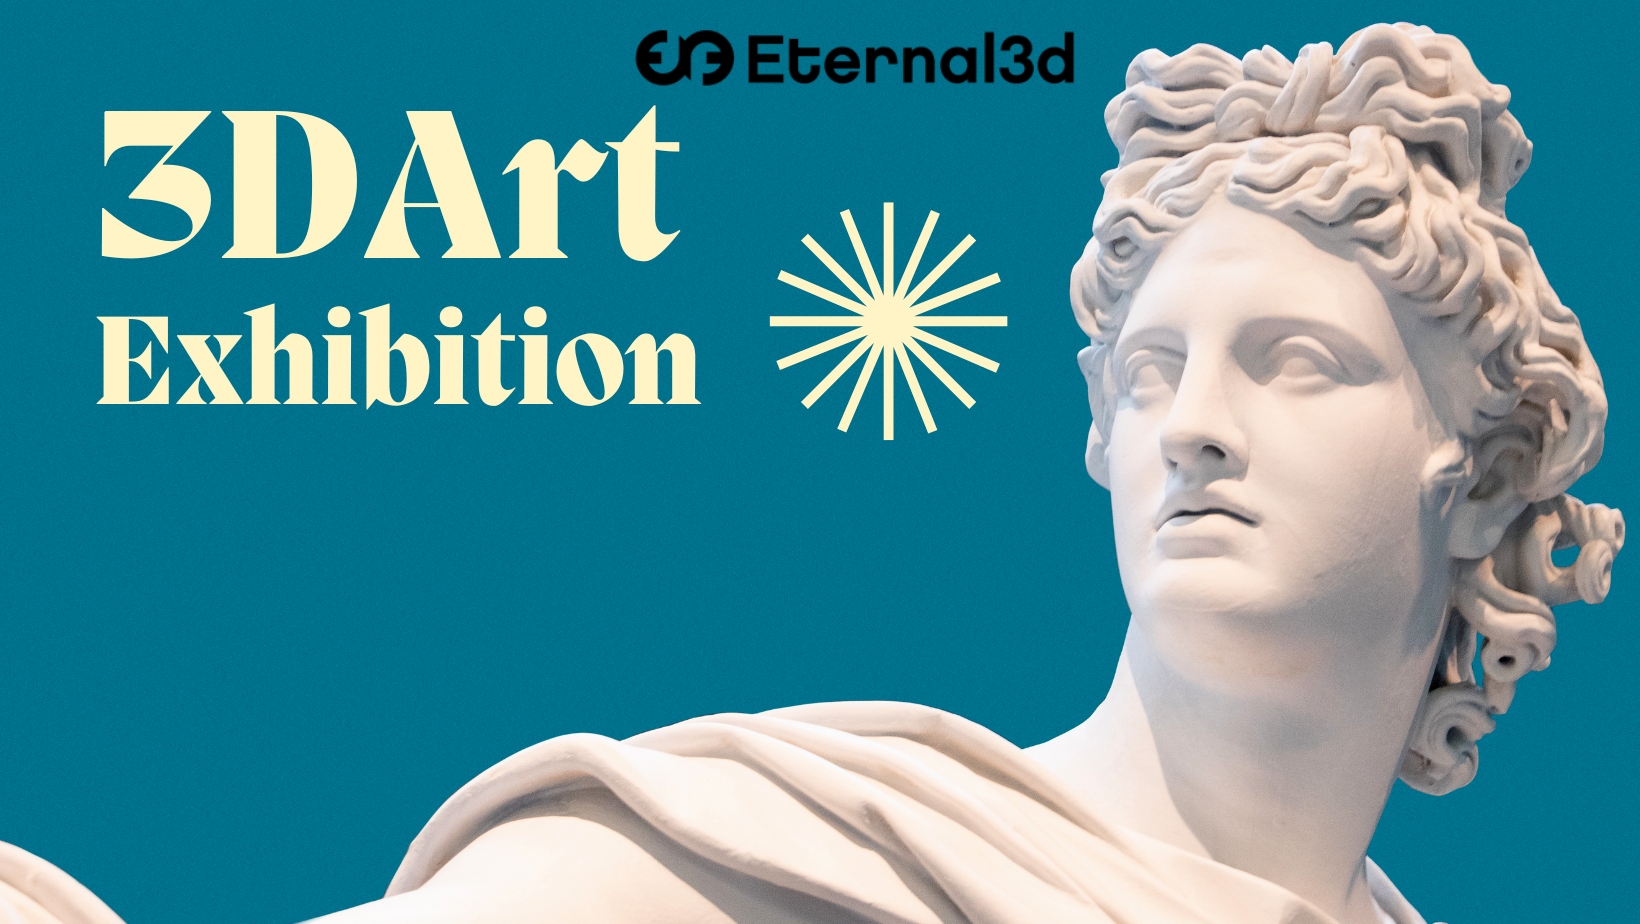 Eternal3D - 3D Art Exhibition app - blog